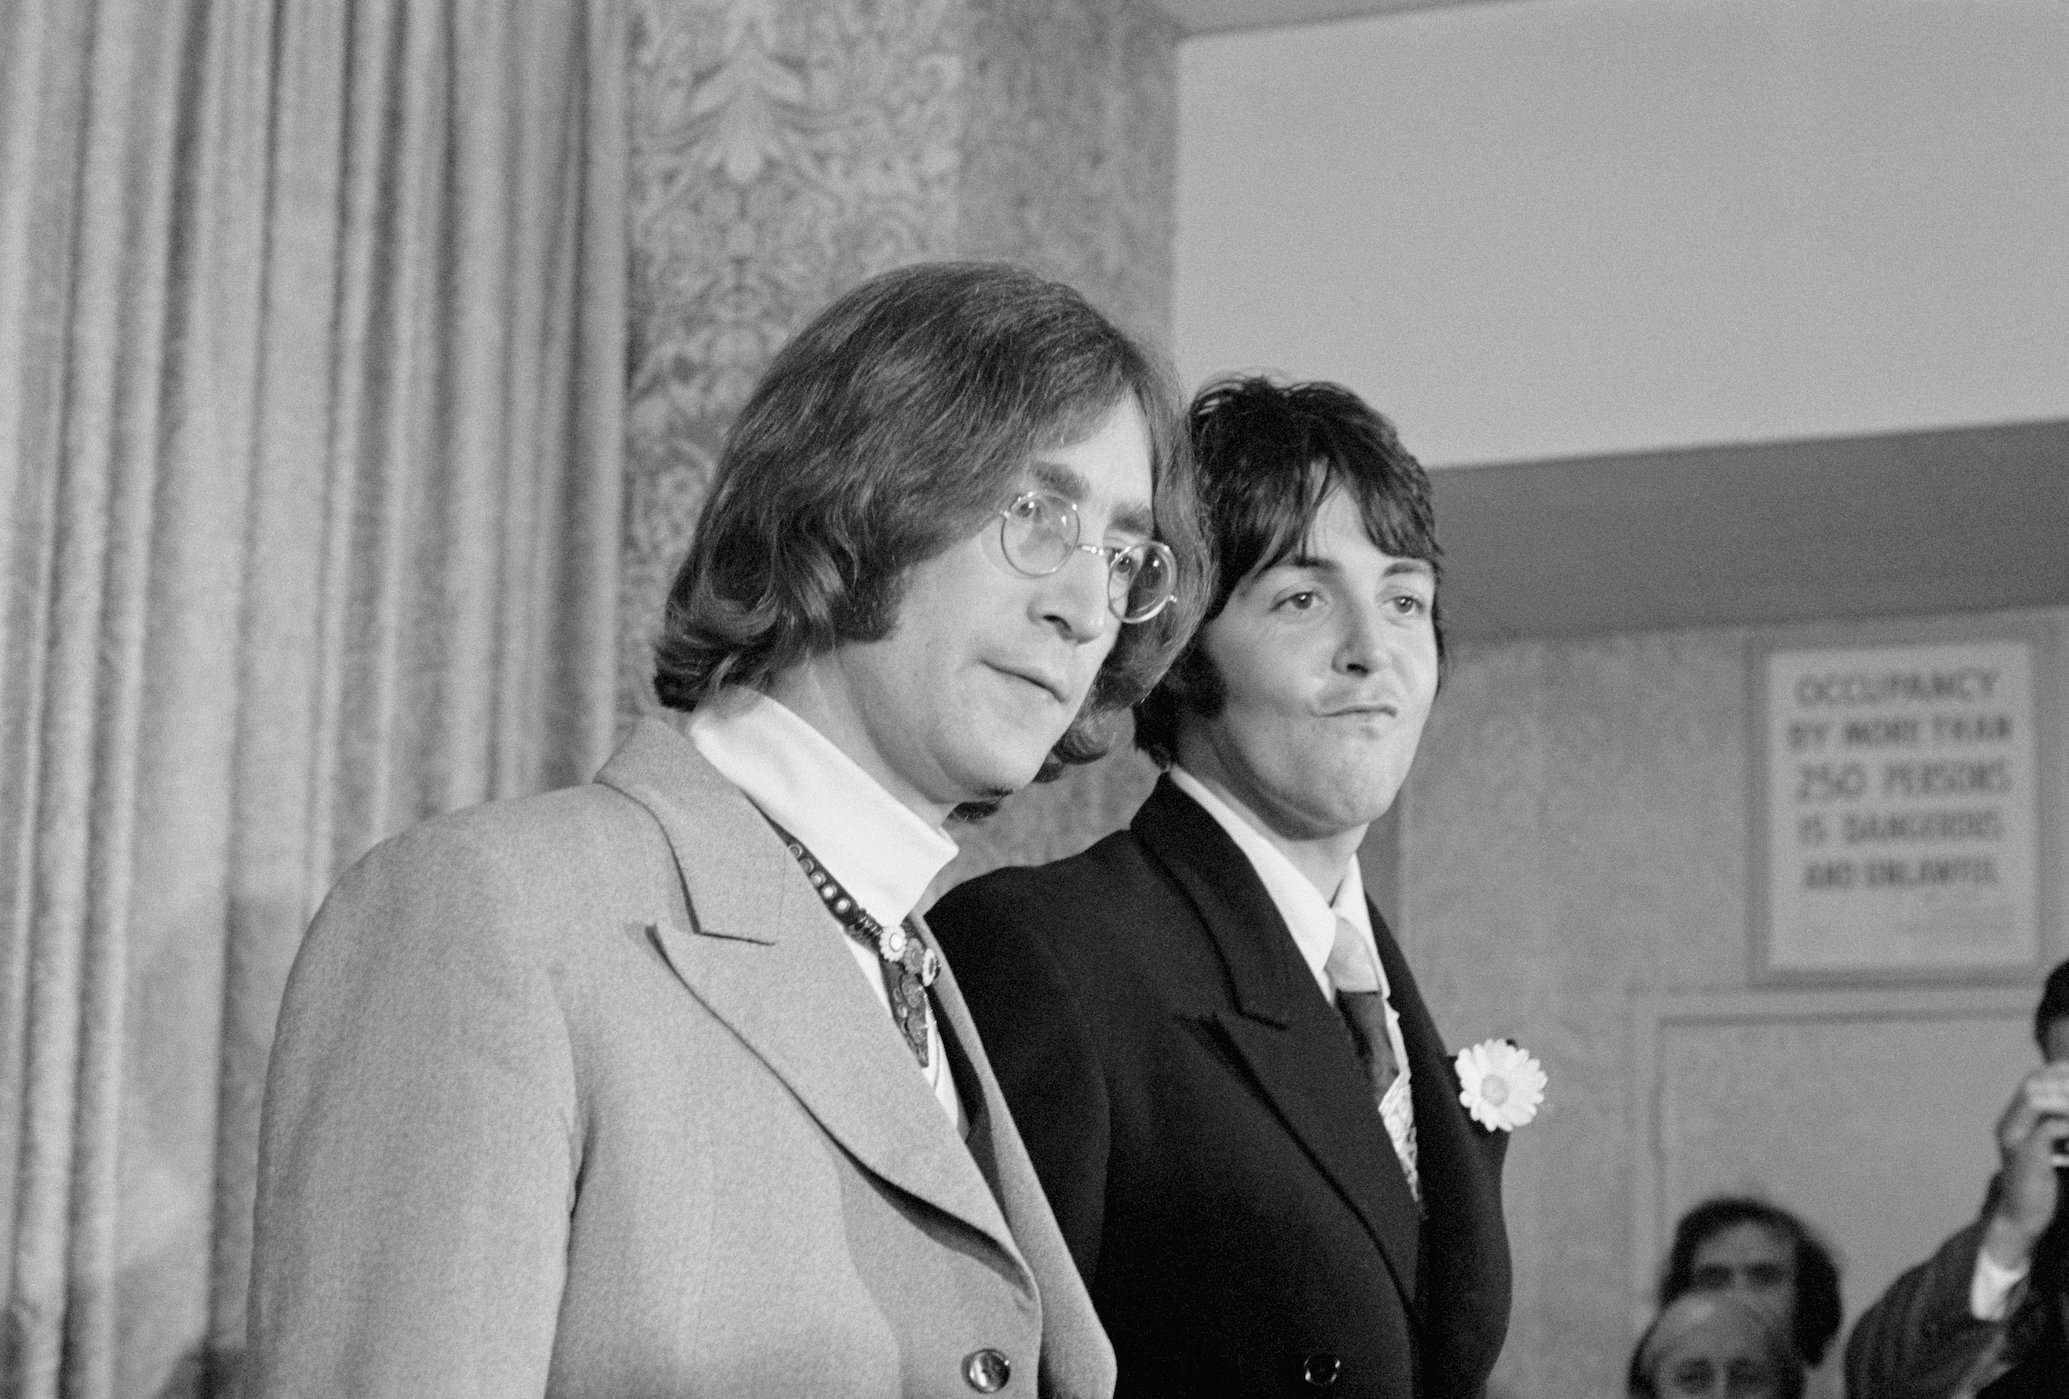 Paul McCartney a partagé ce qui l'a le plus impressionné à propos de John Lennon lors de leur première rencontre